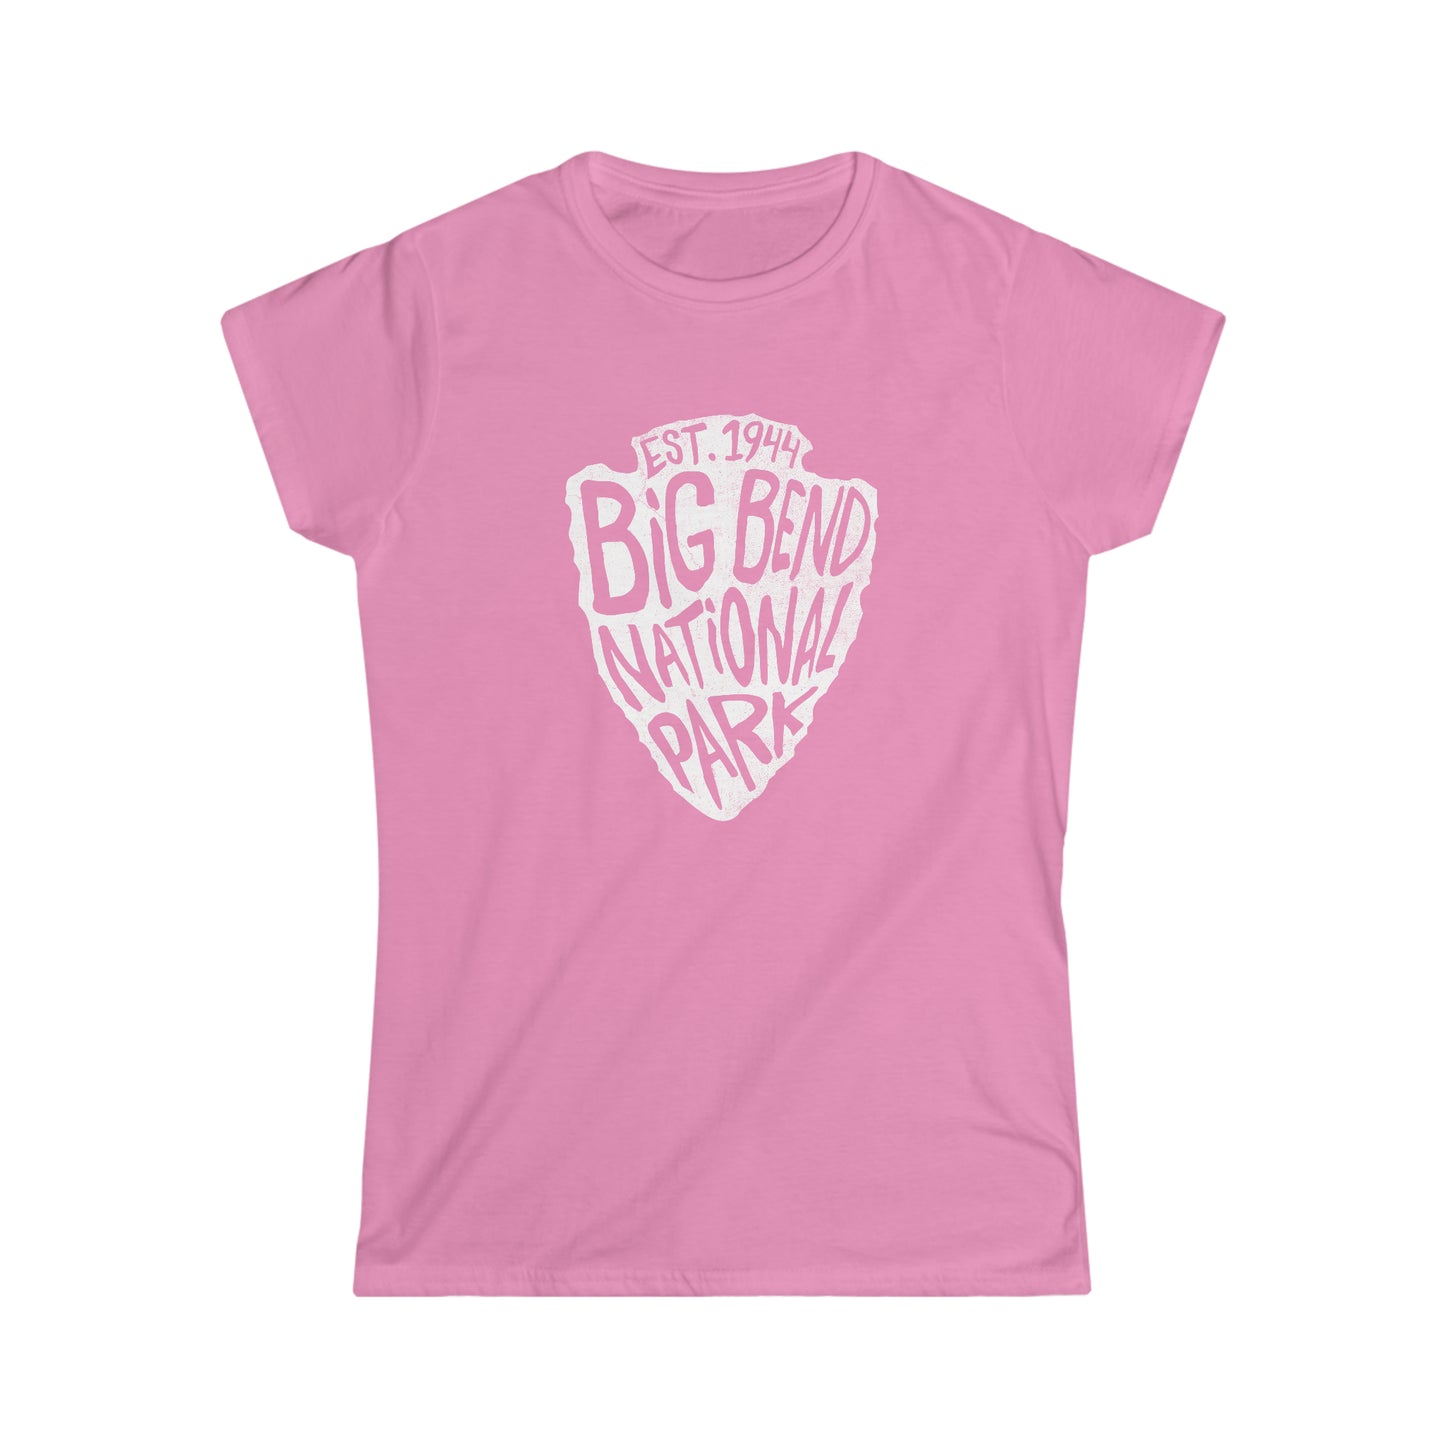 Big Bend National Park Women's T-Shirt - Arrowhead Design